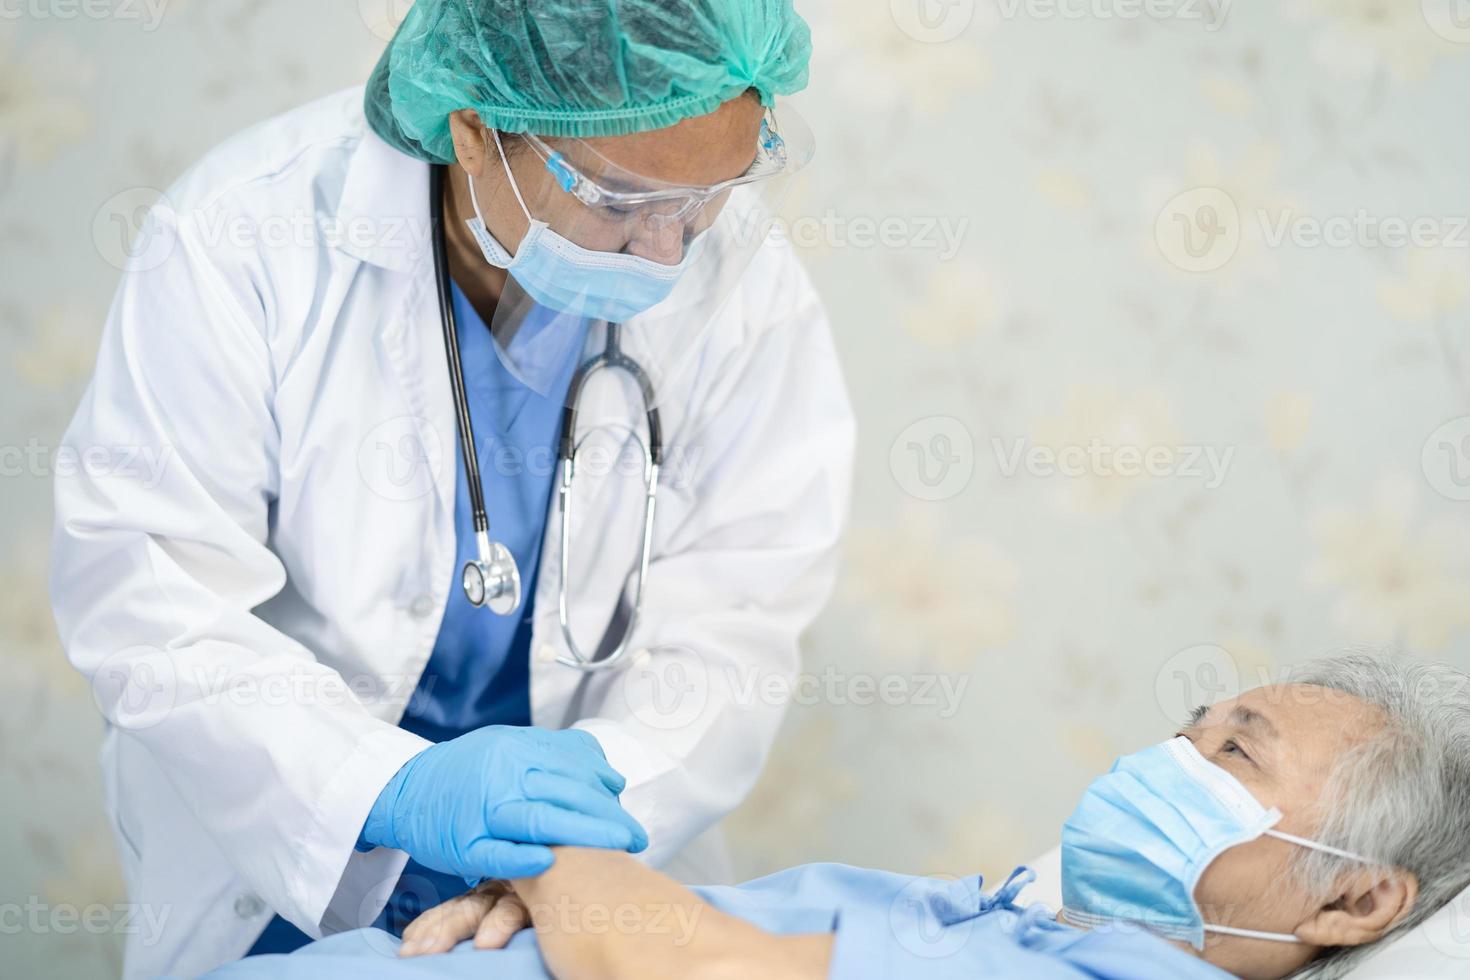 medico asiatico che indossa visiera e tuta in dpi nuovo normale per controllare il paziente proteggere la sicurezza infezione covid-19 focolaio di coronavirus nel reparto ospedaliero di quarantena. foto